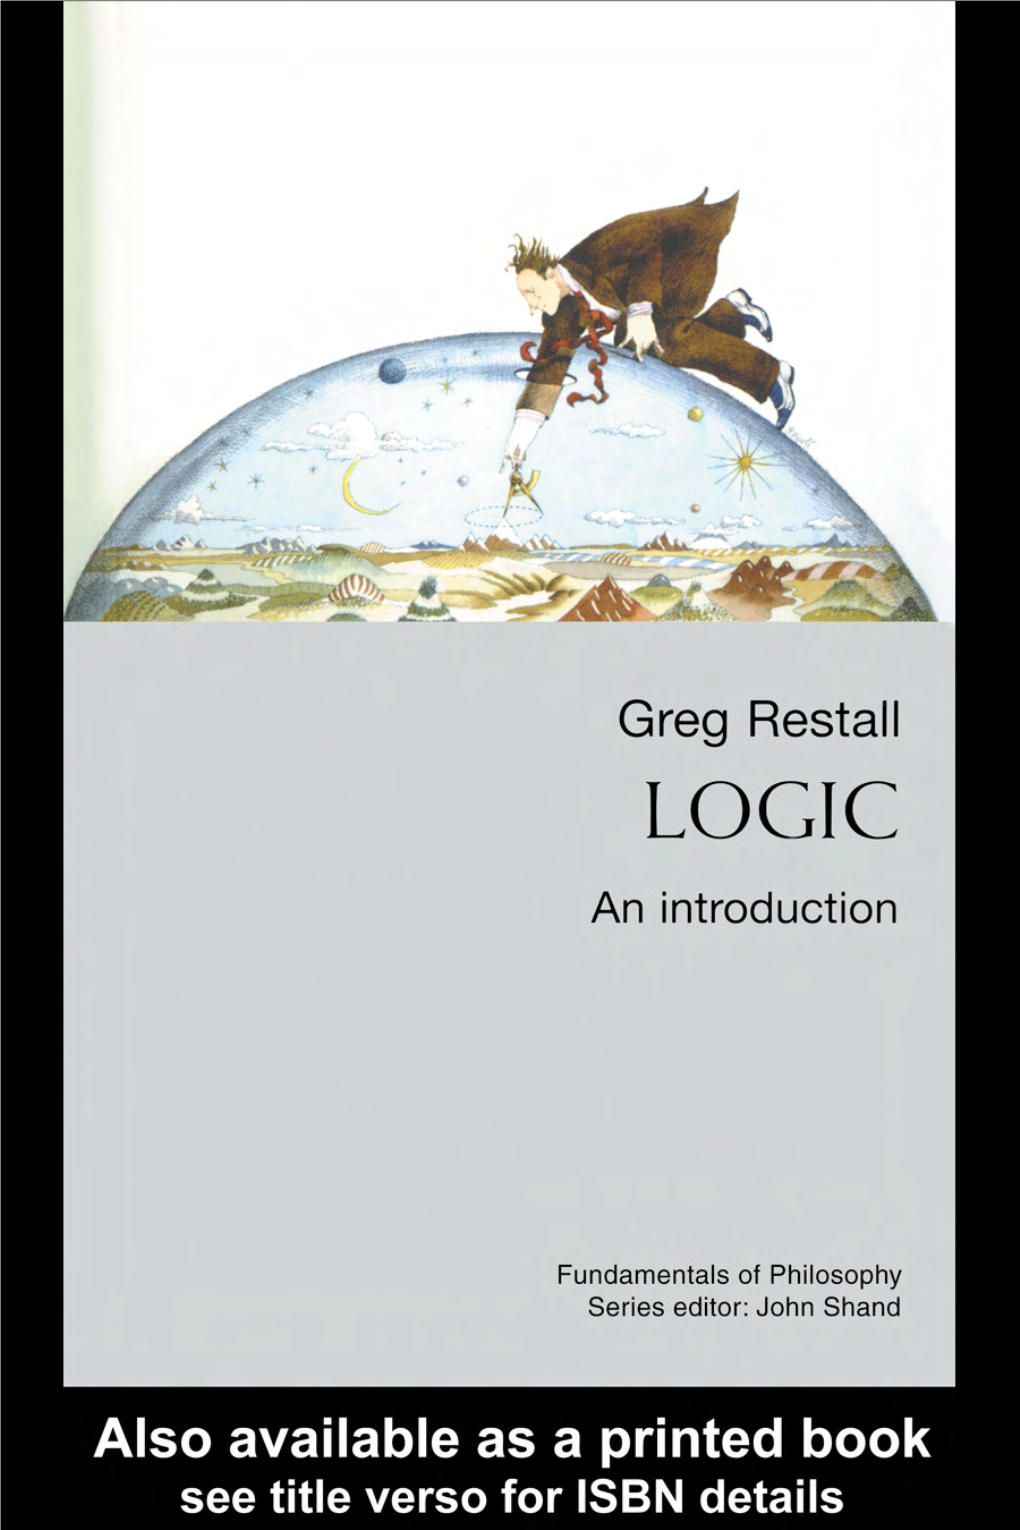 Greg Restall Is Associate Professor in Philosophy at Melbourne University, Australia